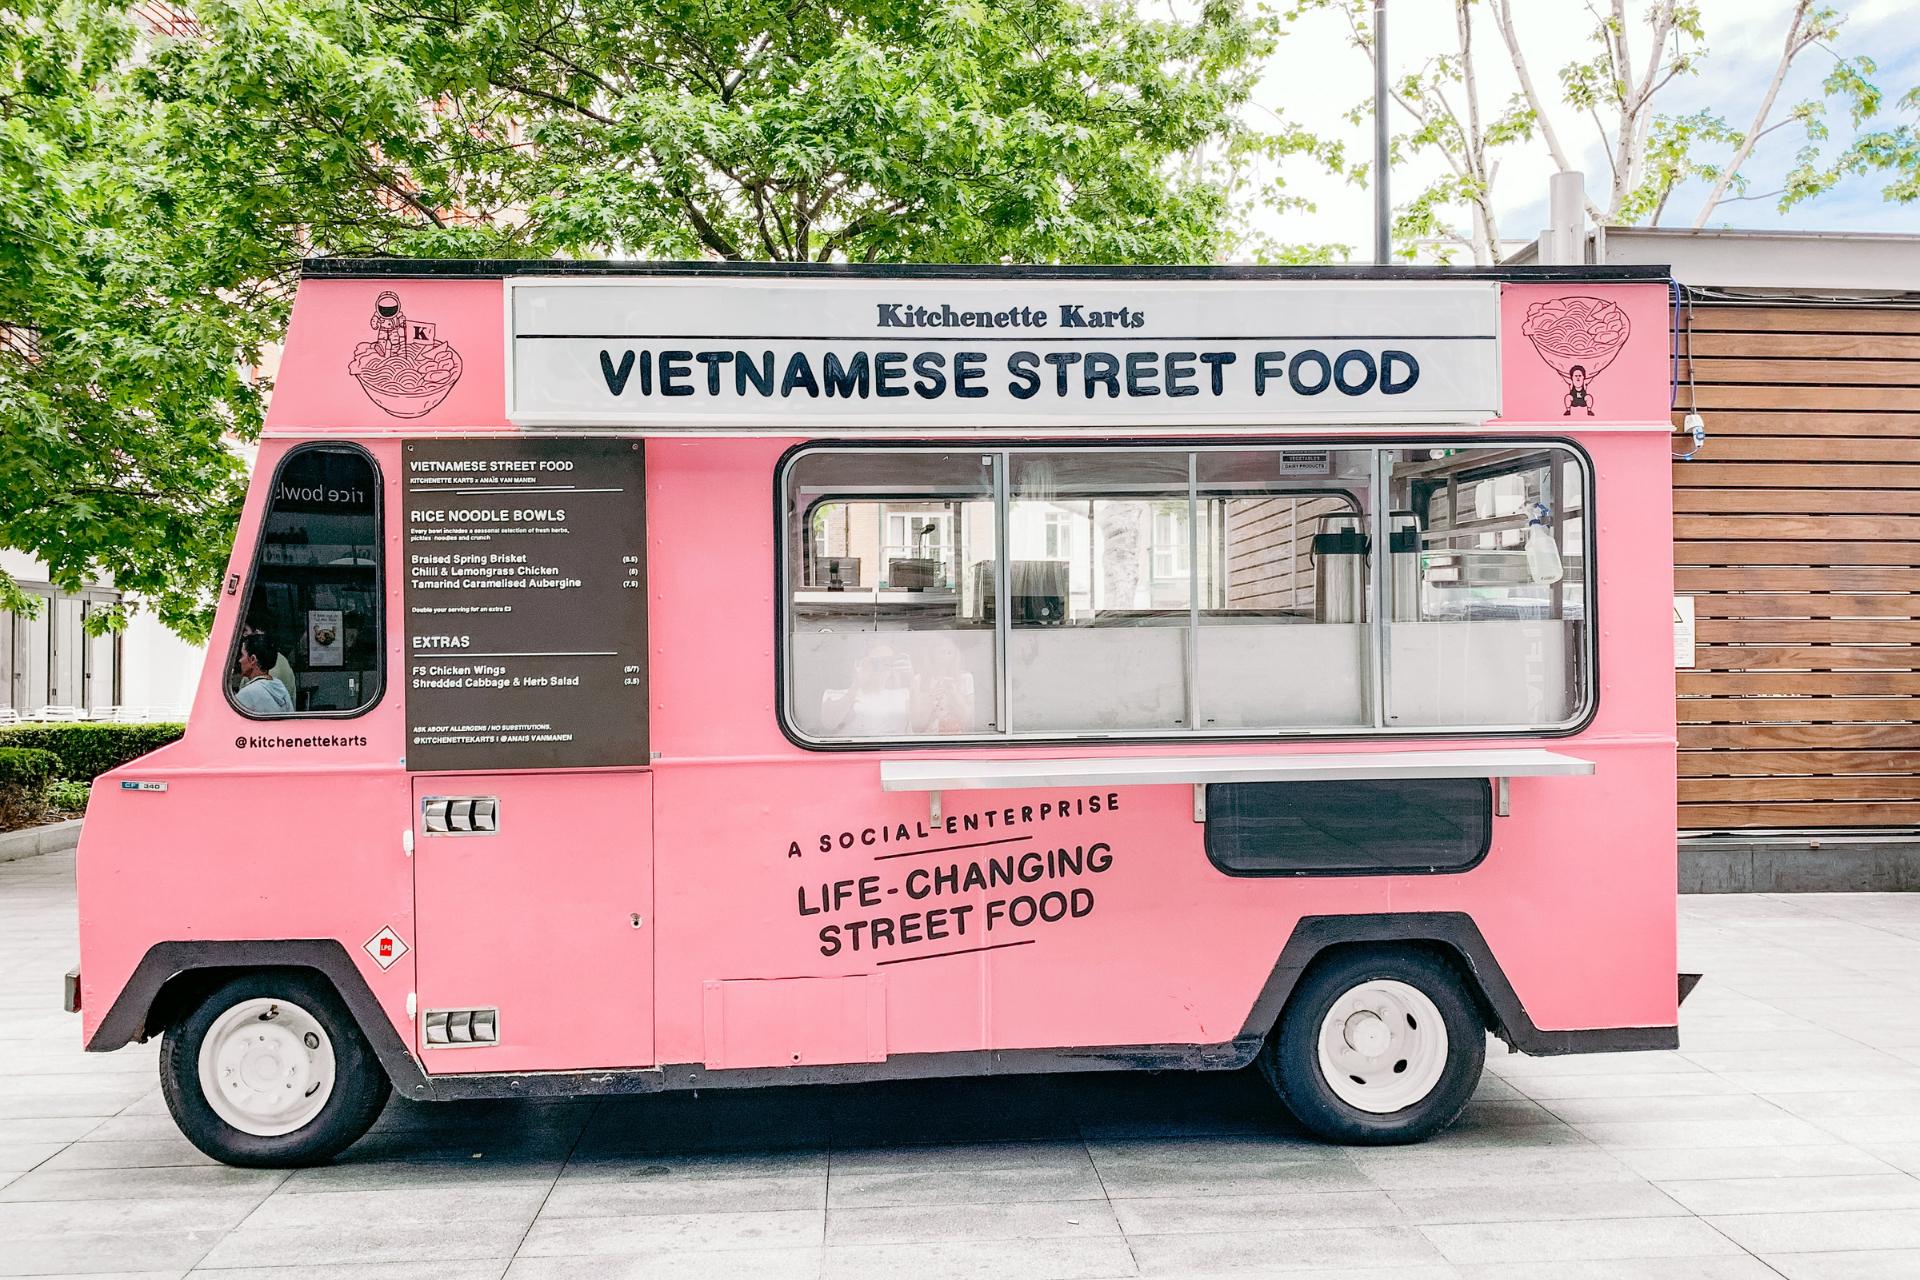 Vietnamese street food food truck parked